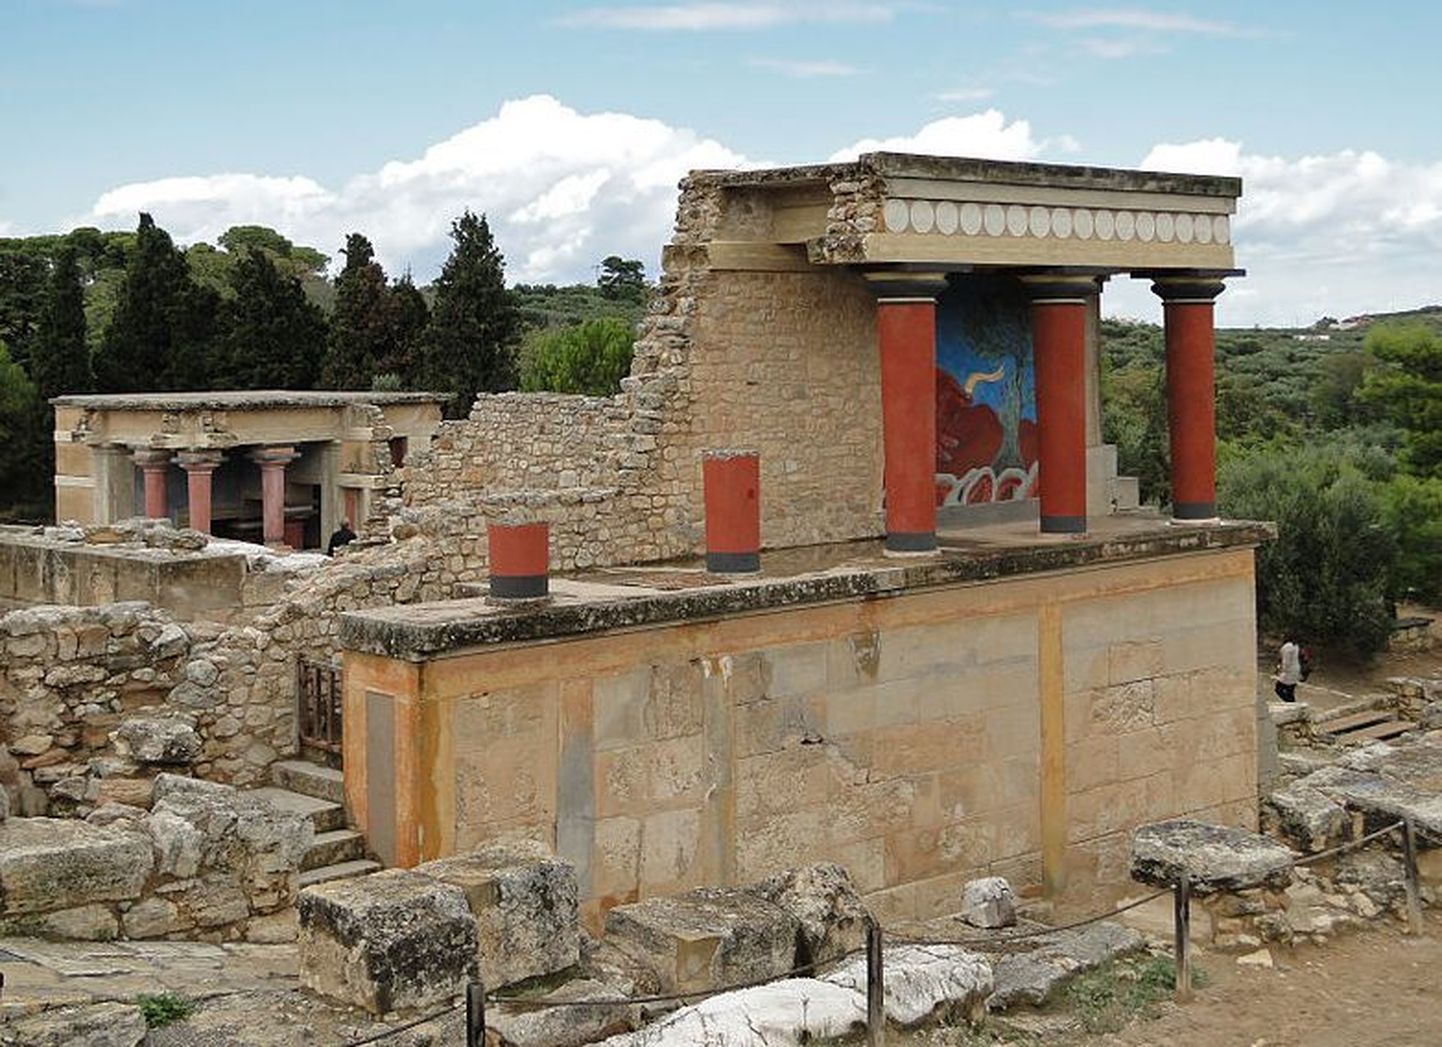 Minose kultuuri poolt rajatud Knossose palee jäänused